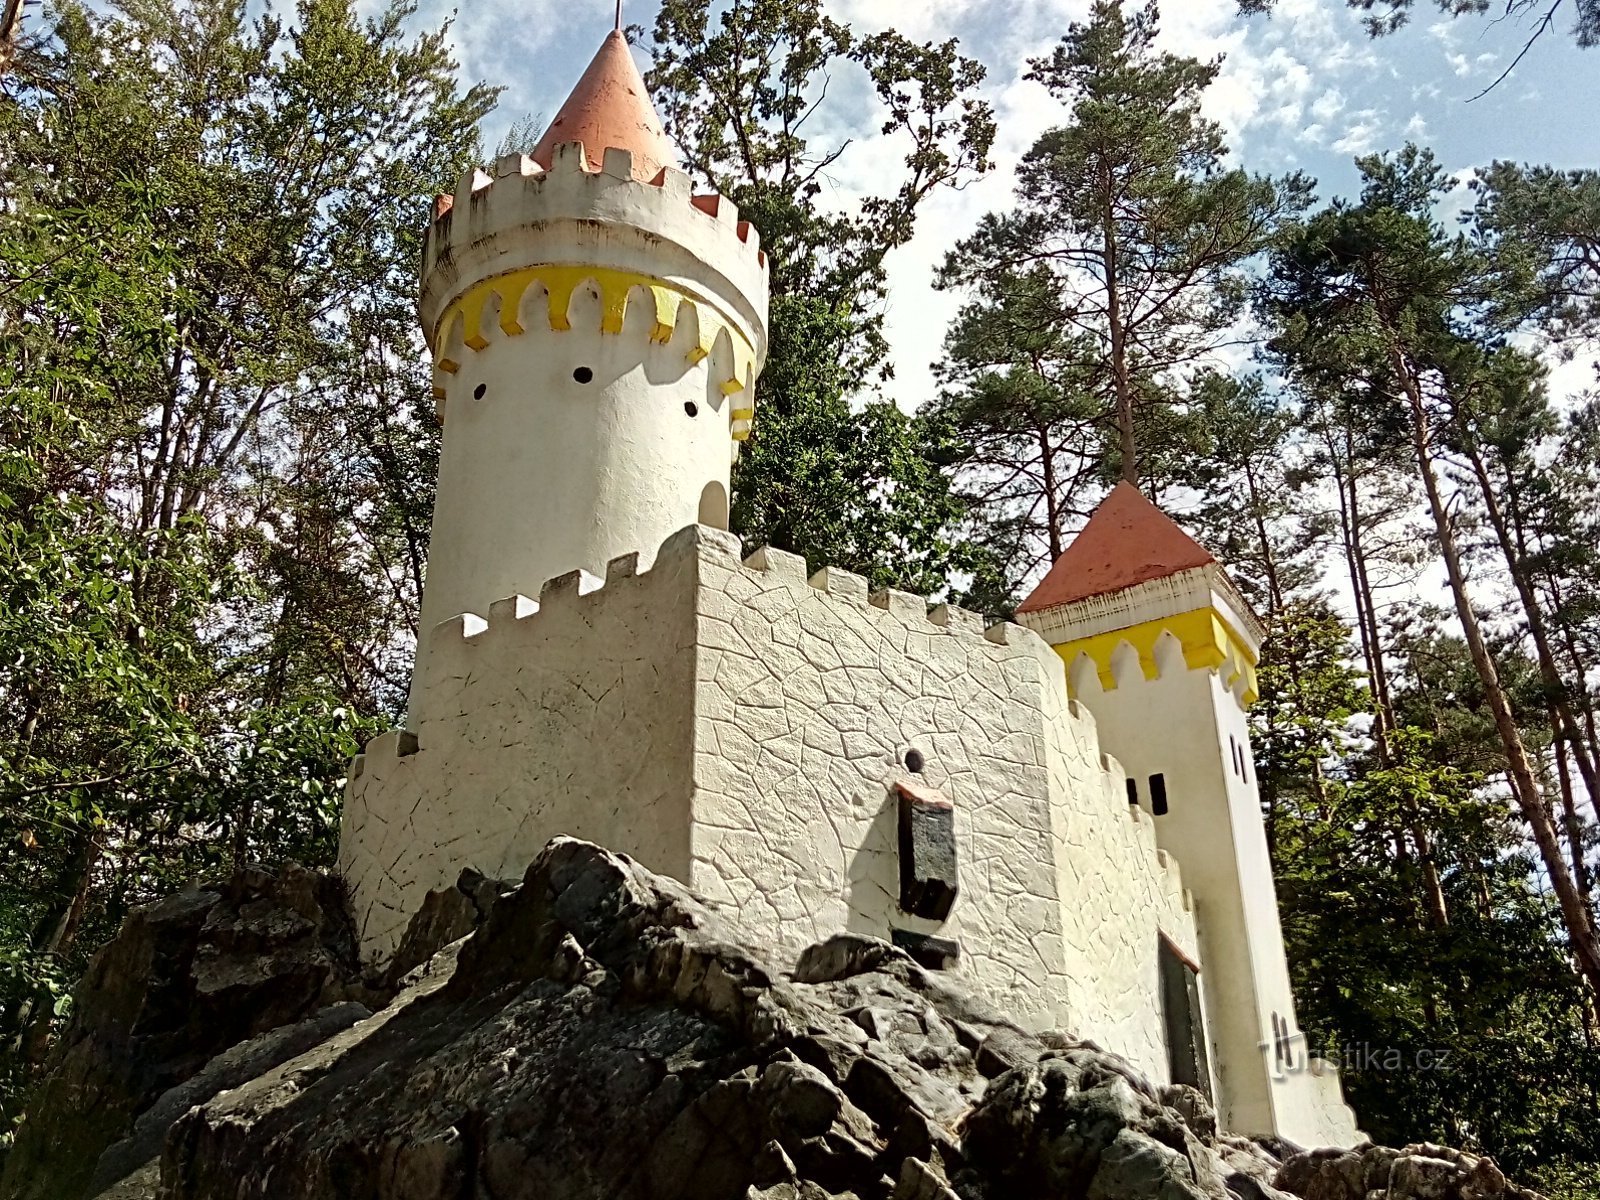 Turnul de observație Na Chlumu și Kočíčí hrádek, Slatiňany